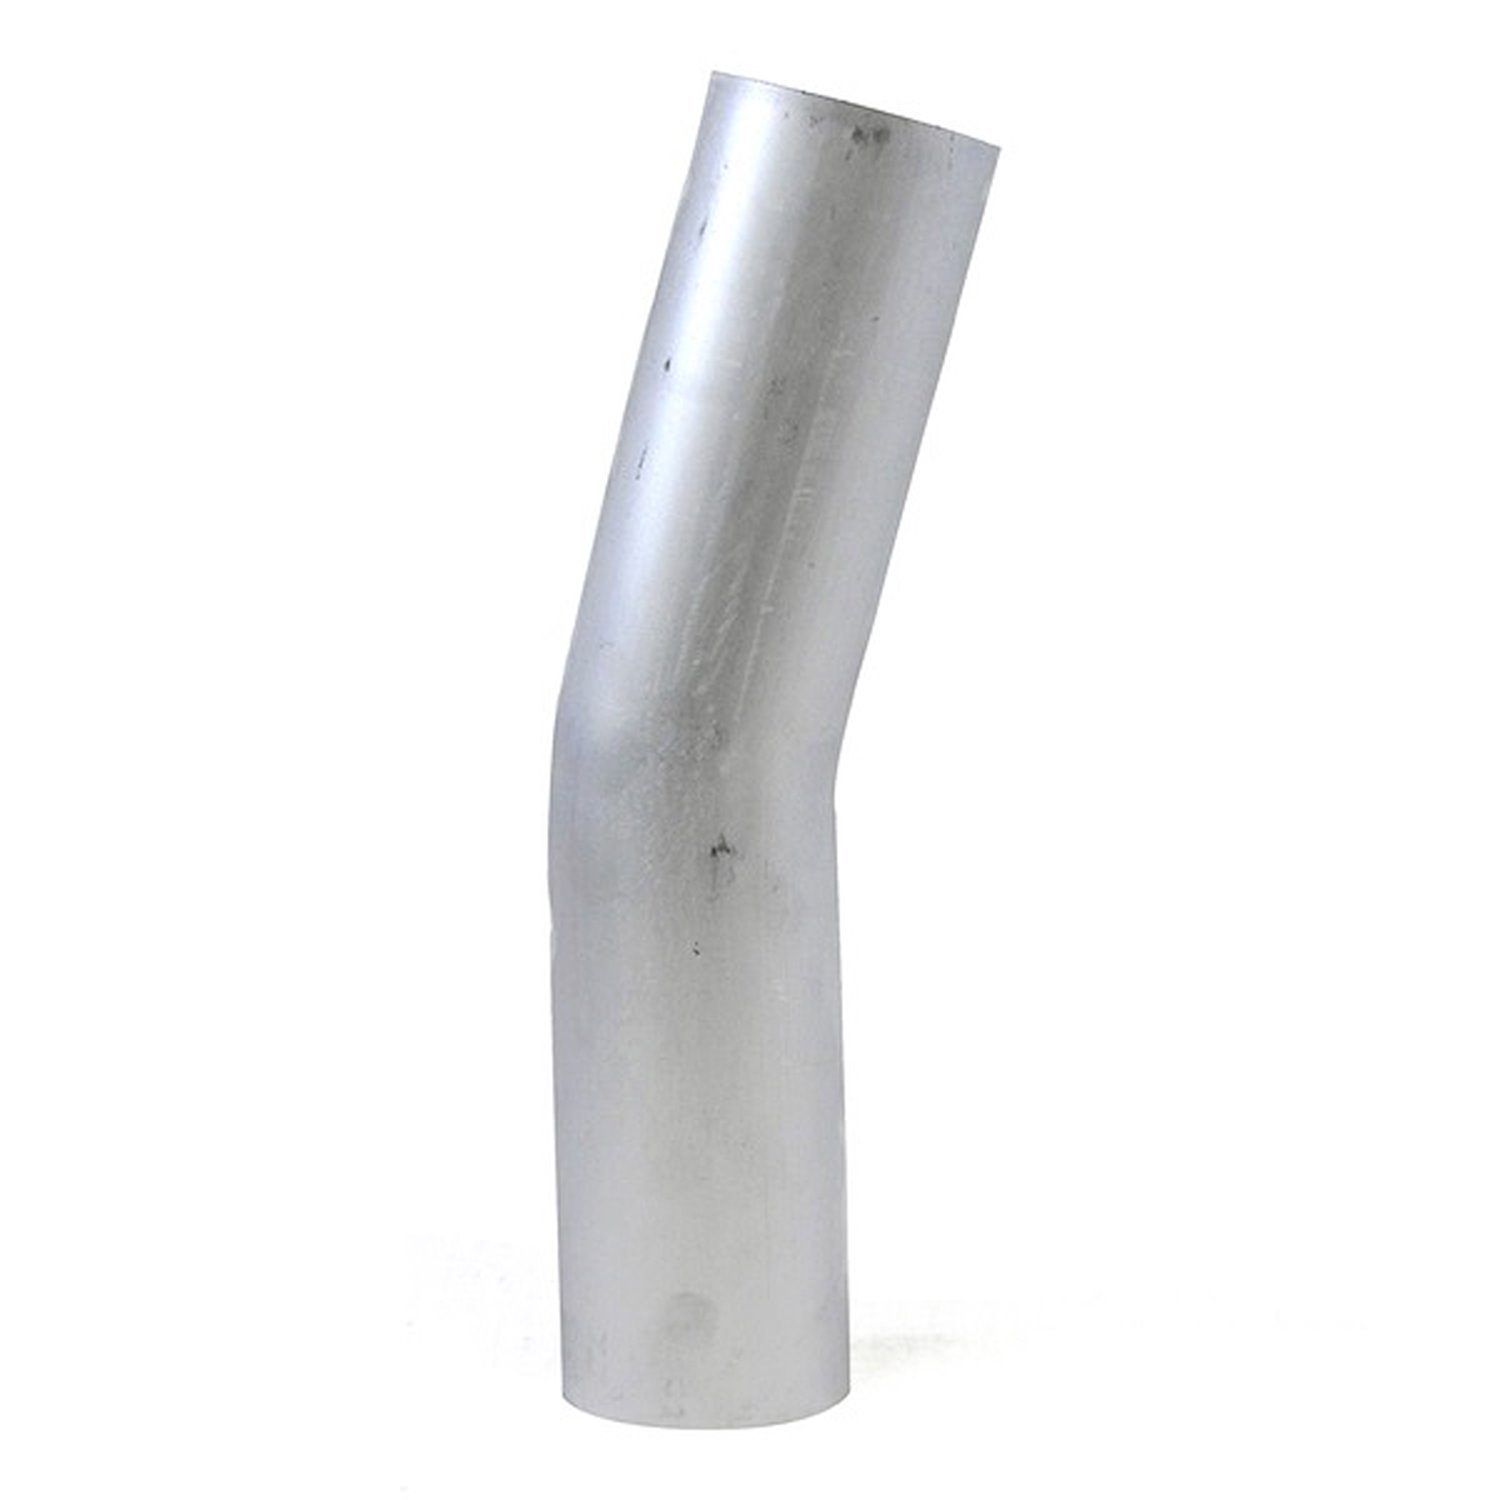 AT15-250-CLR-25 Aluminum Elbow Tube, 6061 Aluminum, 15-Degree Bend Elbow Tubing, 2-1/2 in. OD, Tight Radius, 2-1/2 in. CLR